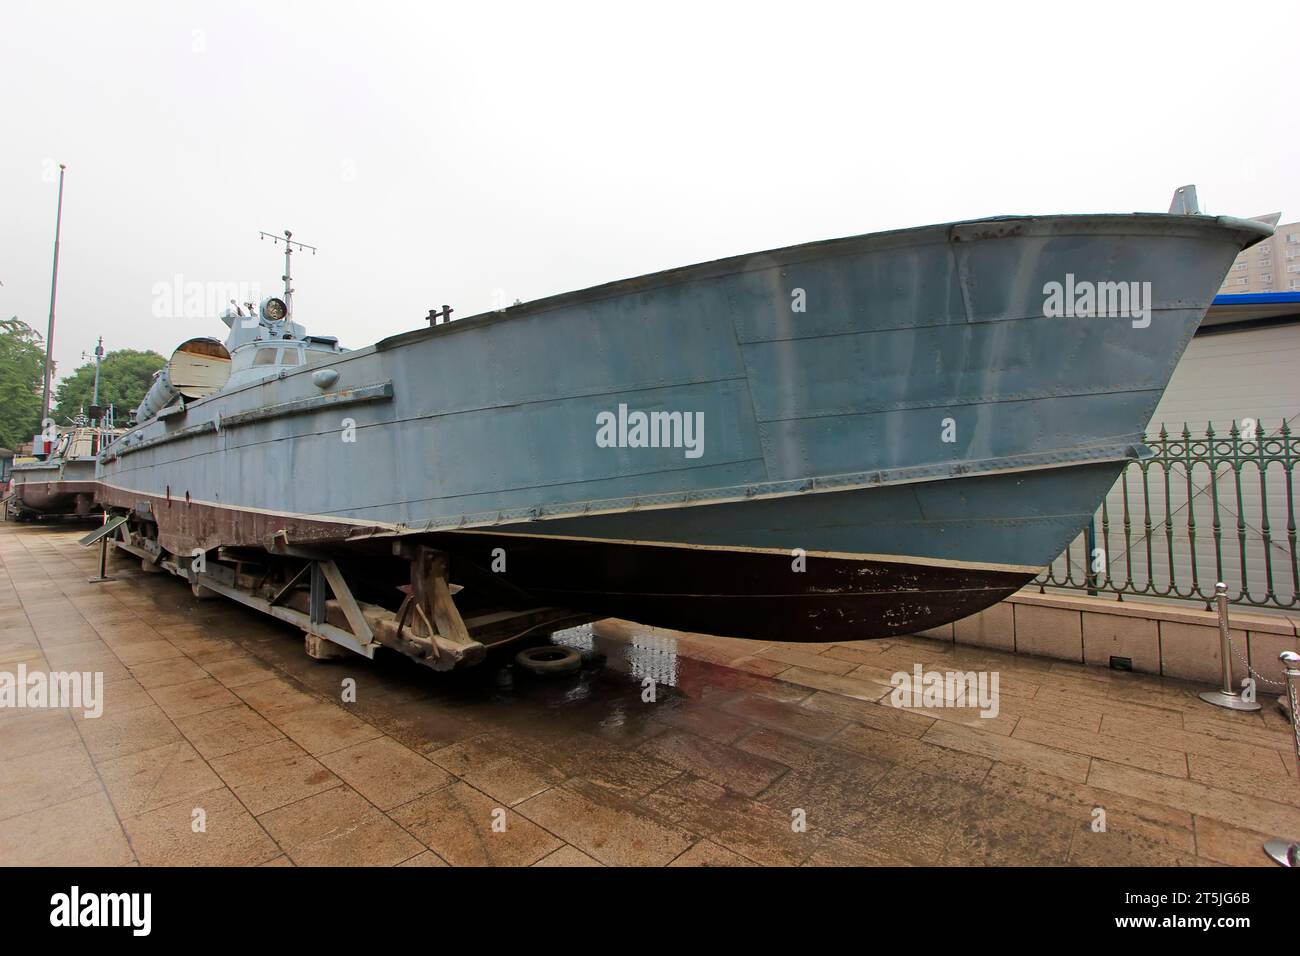 PEKING – 24. MAI: die sowjetunion baute 123 Torpedoboote im chinesischen Militärmuseum am 24. Mai 2014 in Peking, China Stockfoto